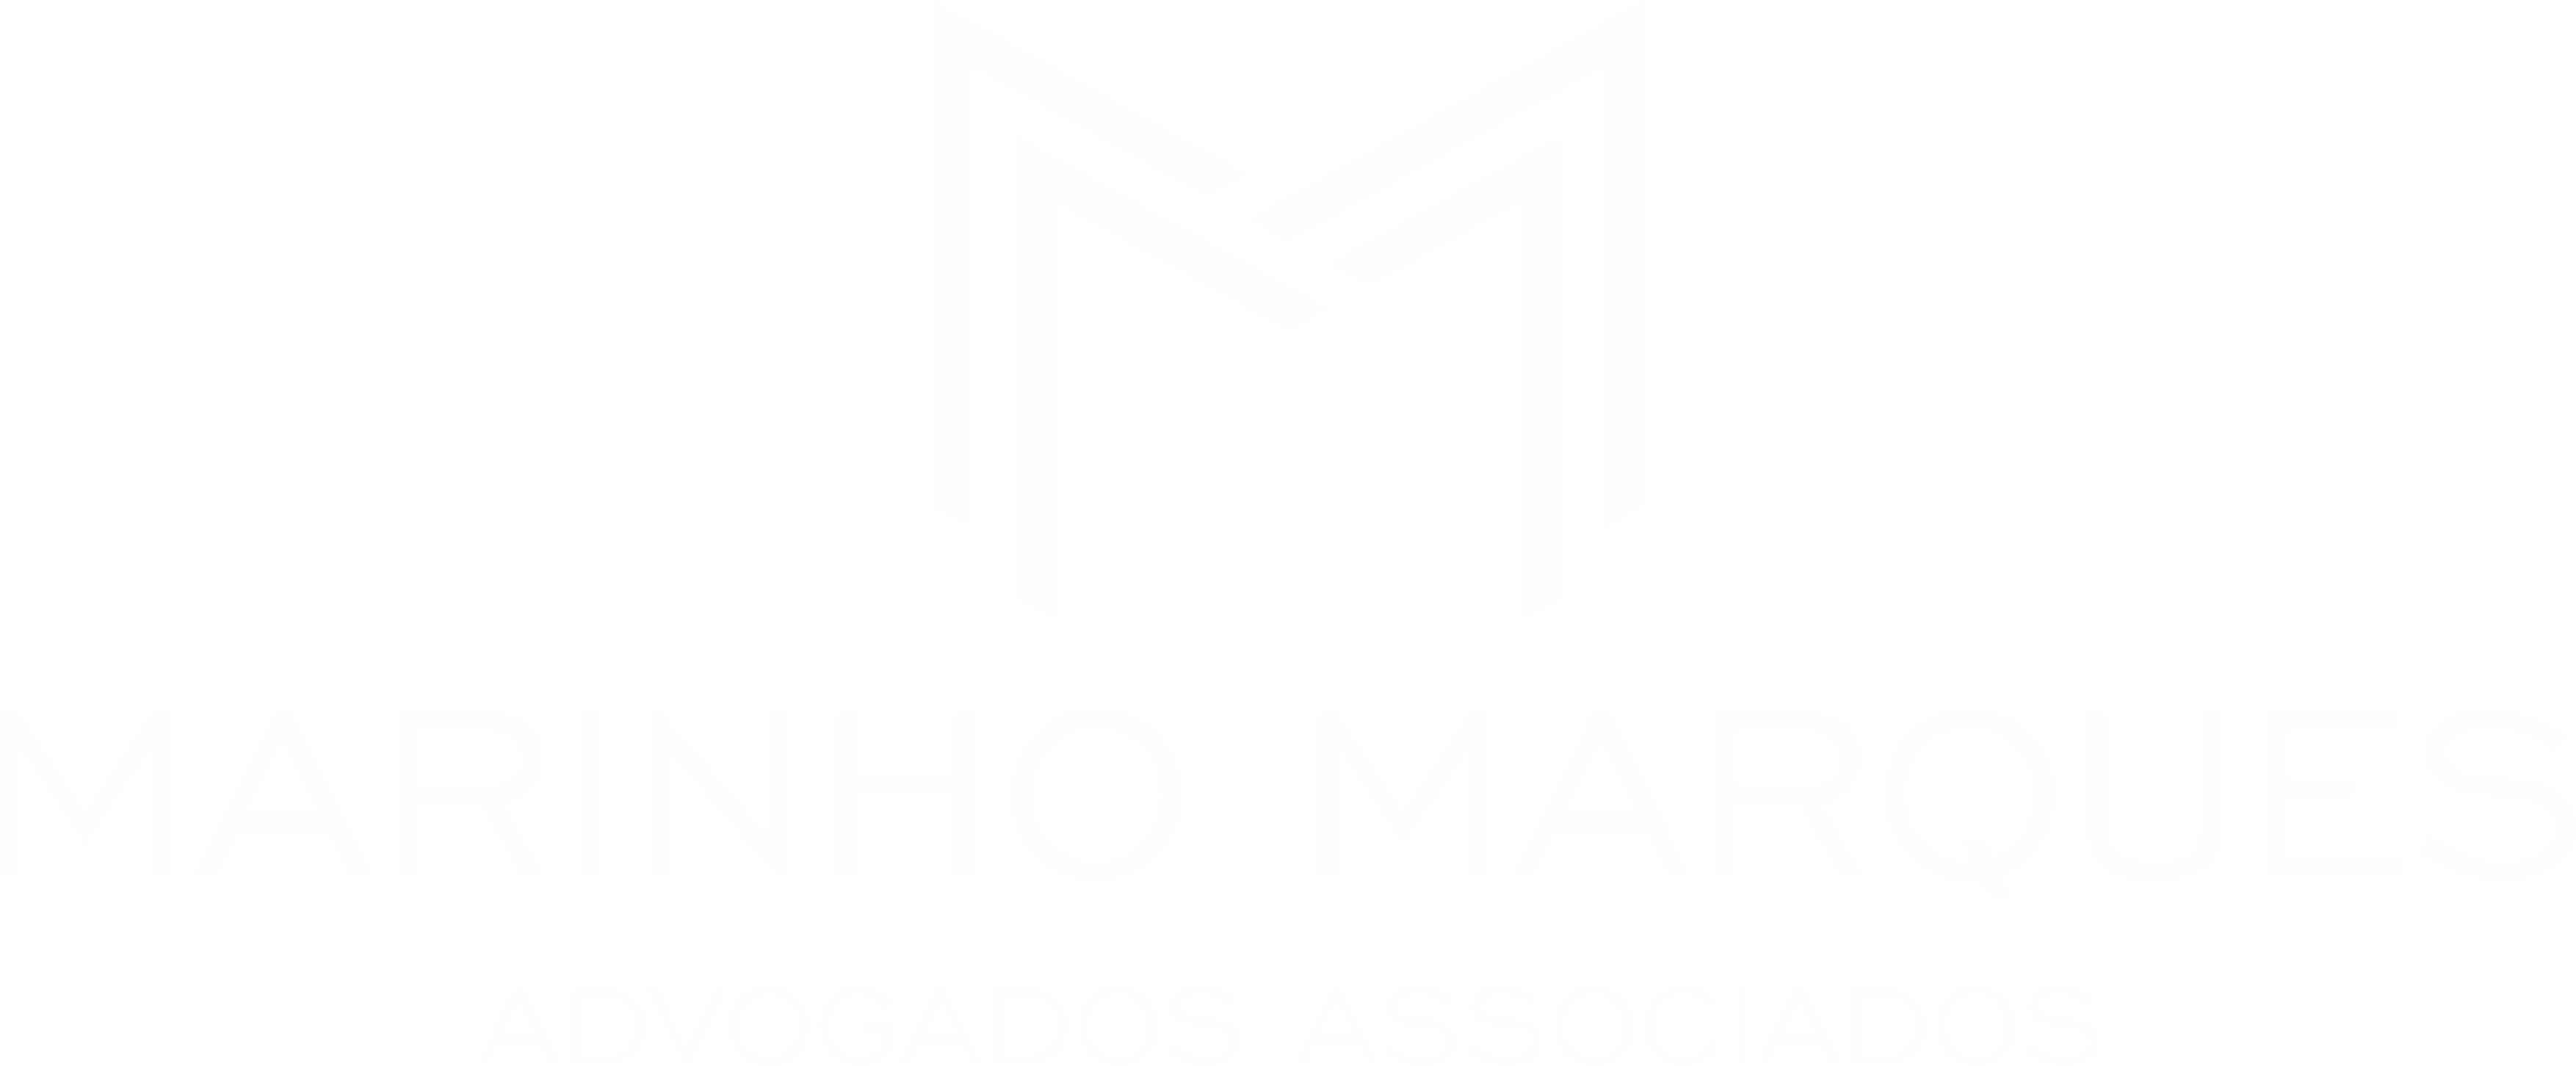 Logotipo Marinho Marques Advogados associados